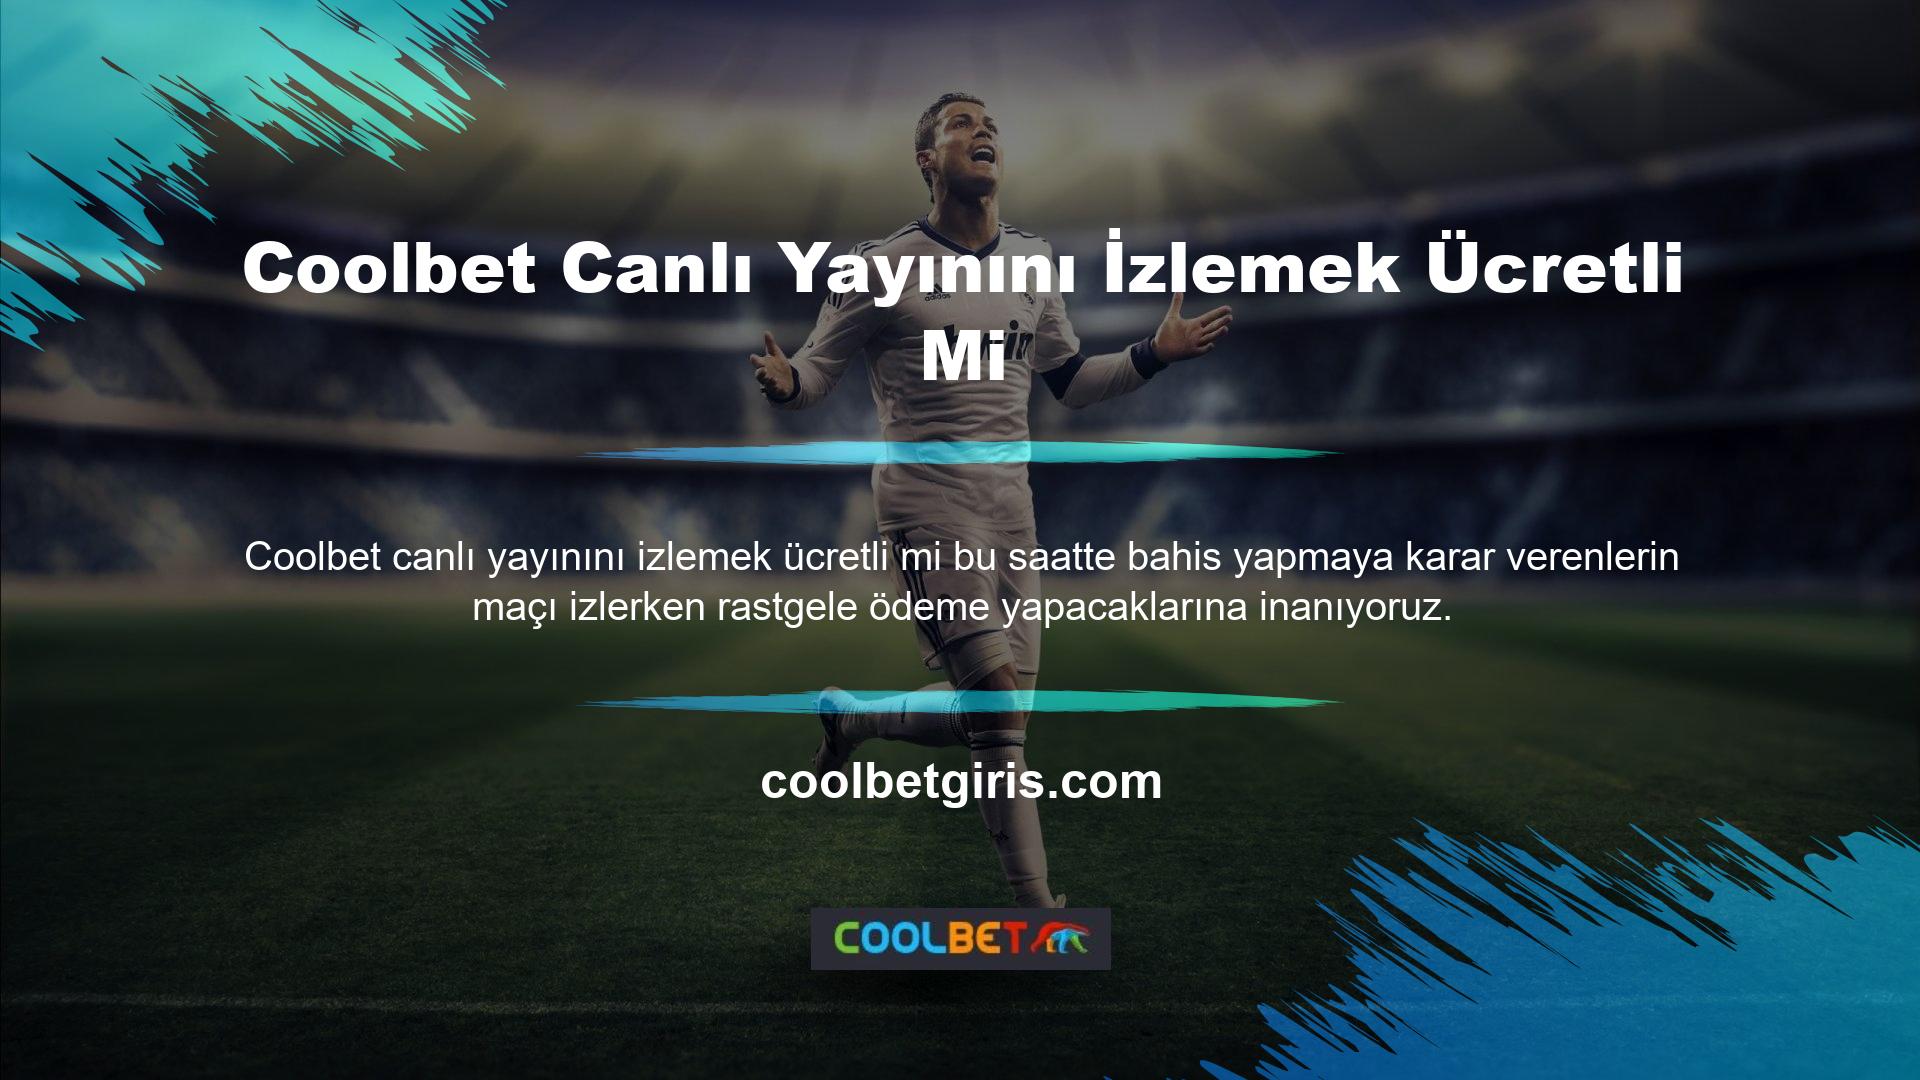 En güvenli hizmetlerden biri olan Coolbet web sitesi, maçları ücretsiz olarak canlı izlemenizi sağlar